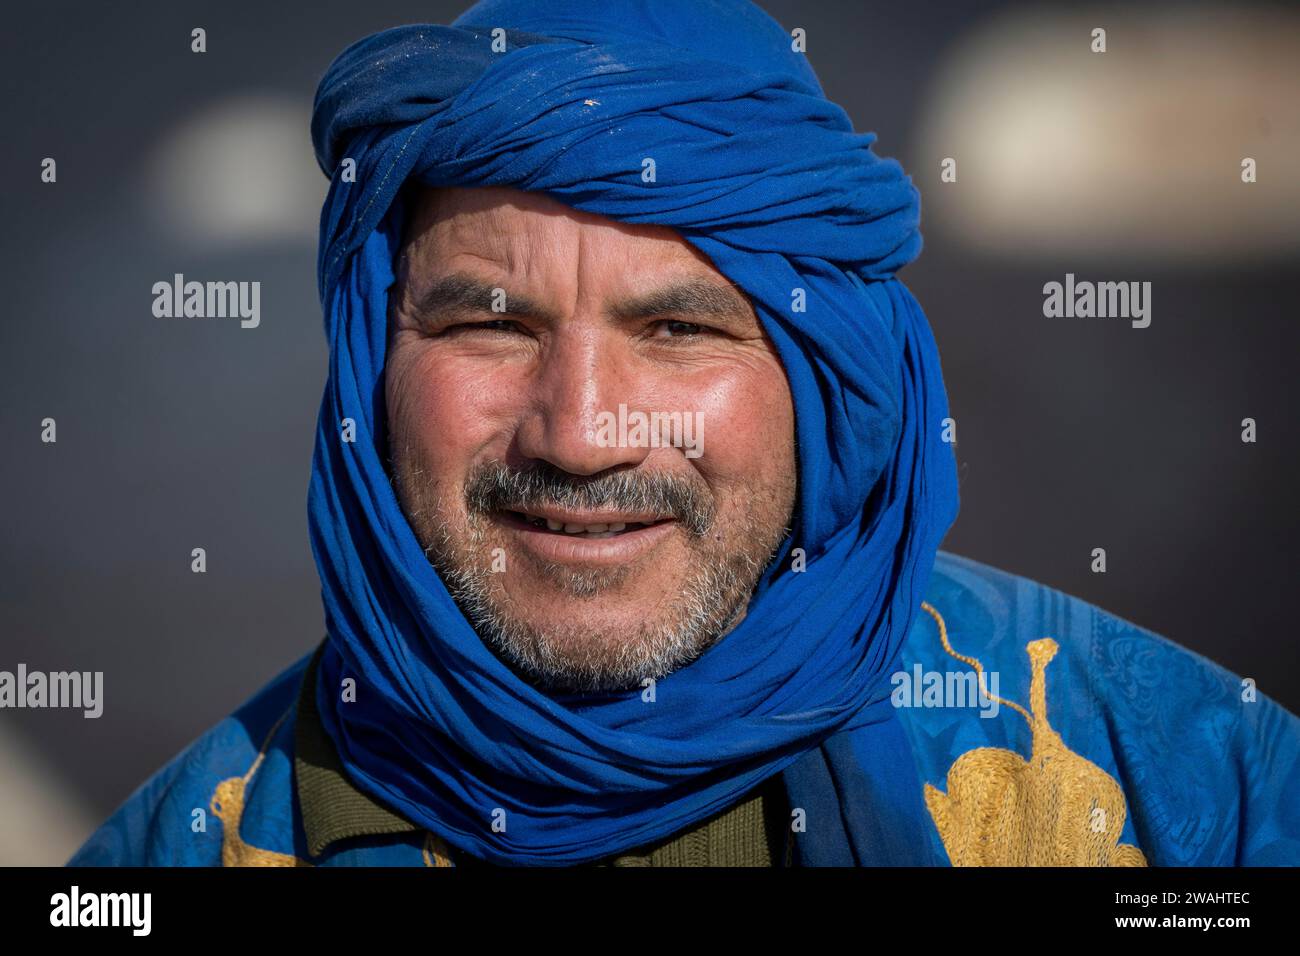 Portrait, berbère avec turban, vêtements traditionnels, Maroc, Afrique Banque D'Images